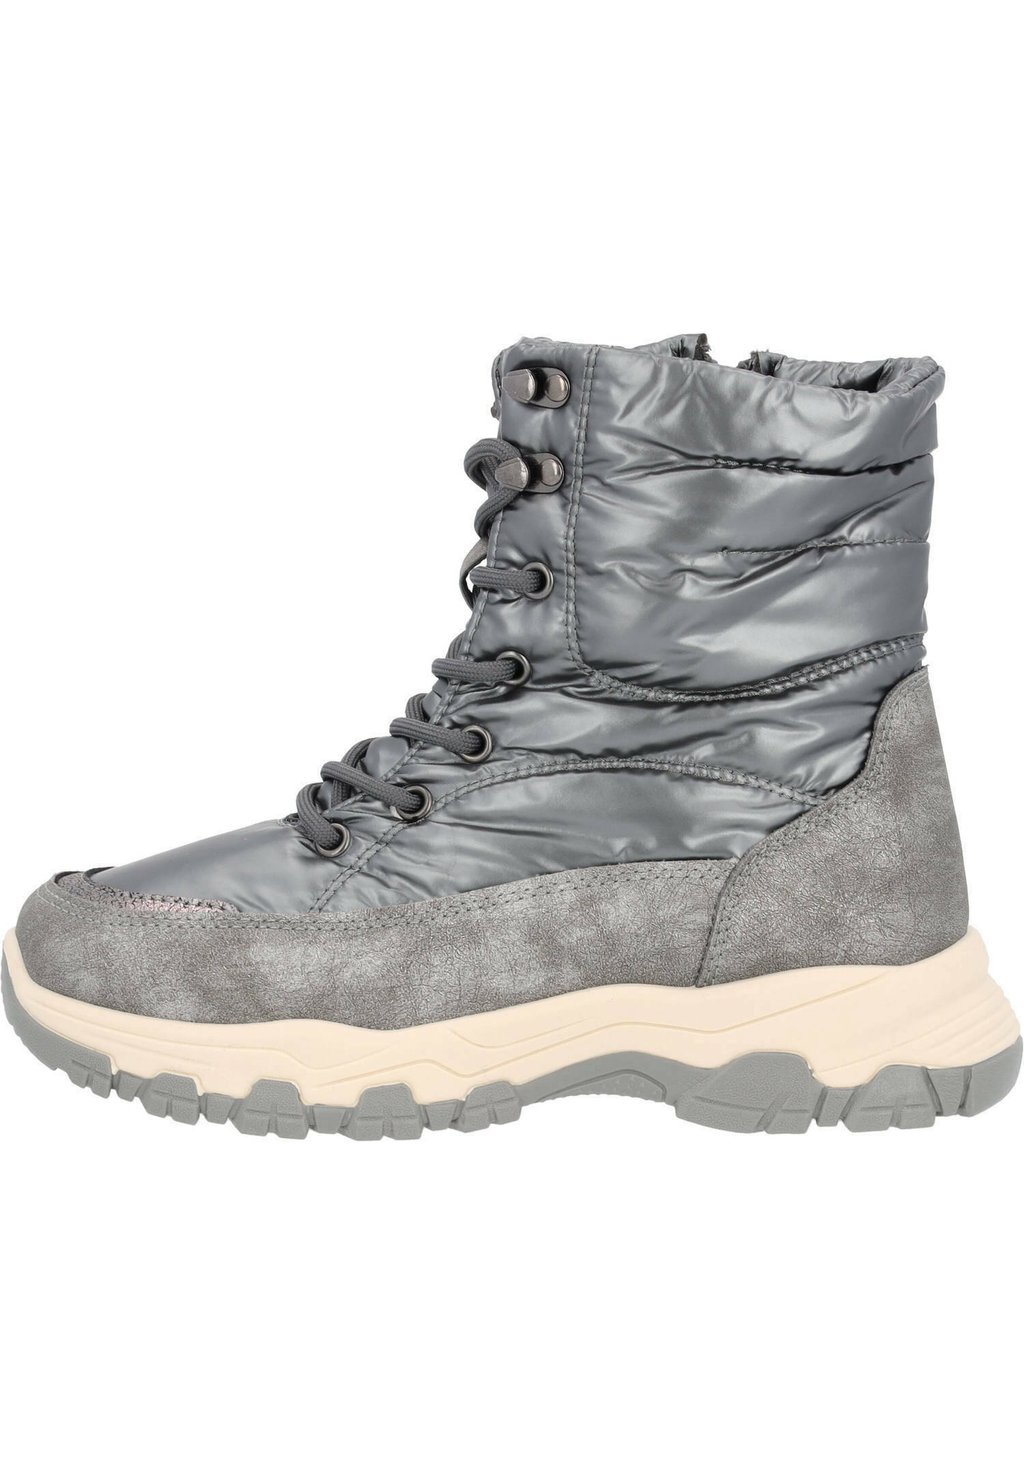 Зимние ботинки Marettimo Palado, цвет grau (metal grey) зимние ботинки marettimo palado черный